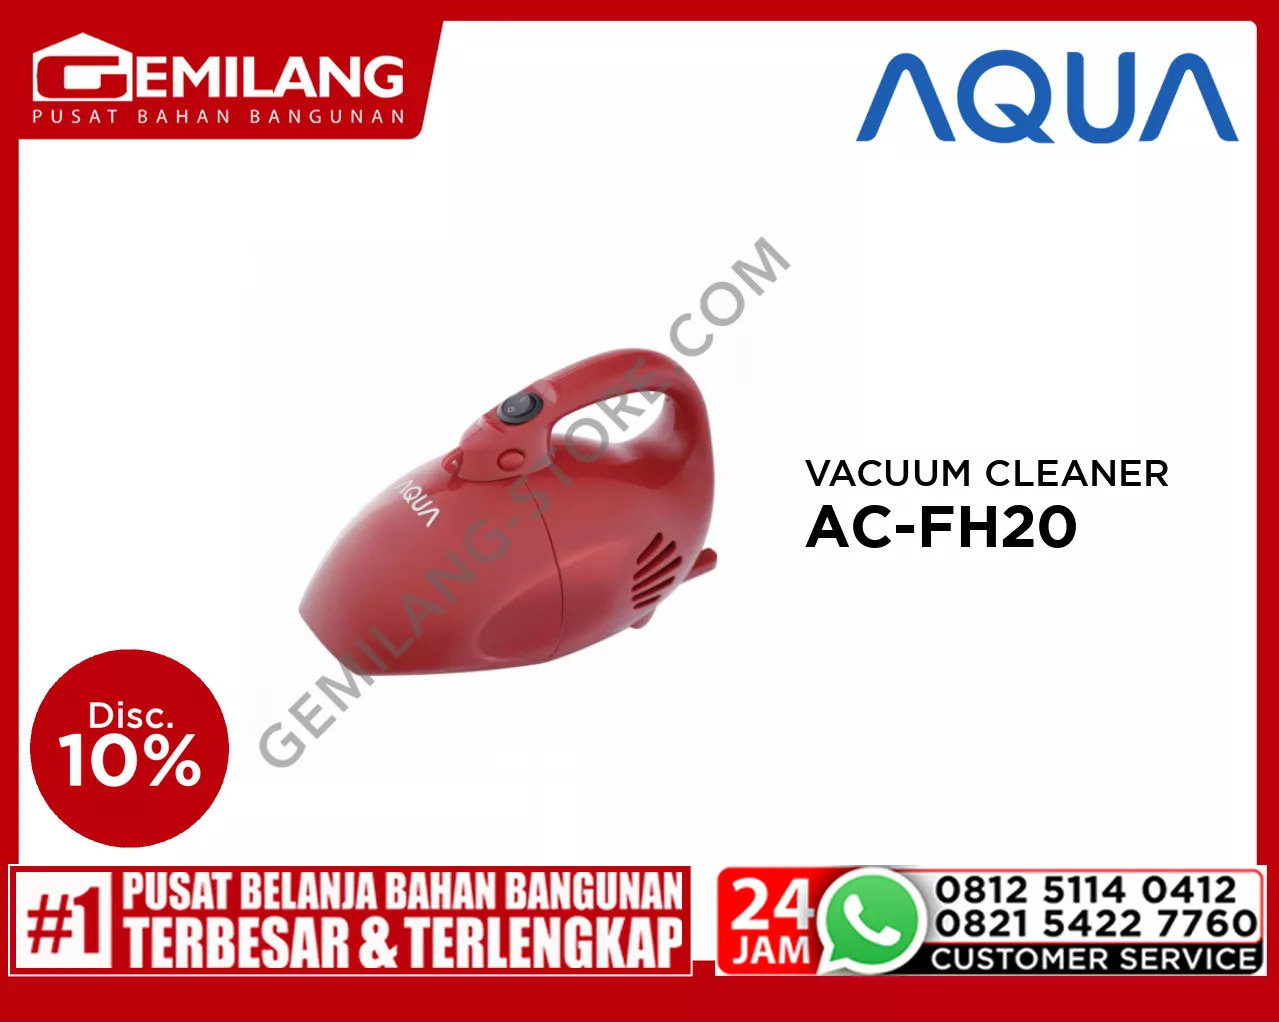 AQUA VACUUM CLEANER AC-FH20